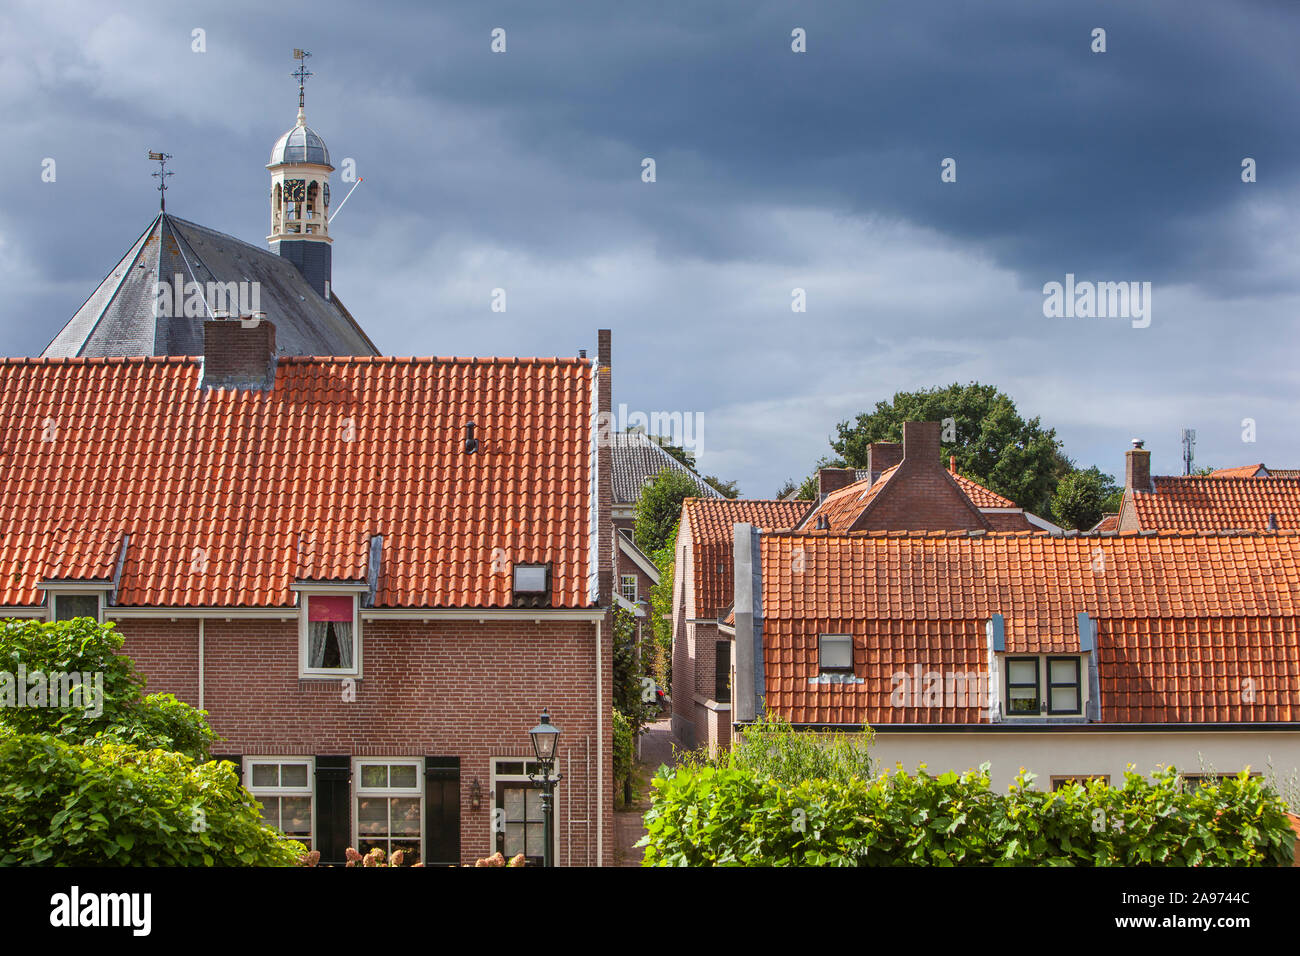 Die traditionellen roten Ziegeldächern und der Turm der Kirche in Nieuwpoort in den Niederlanden Stockfoto